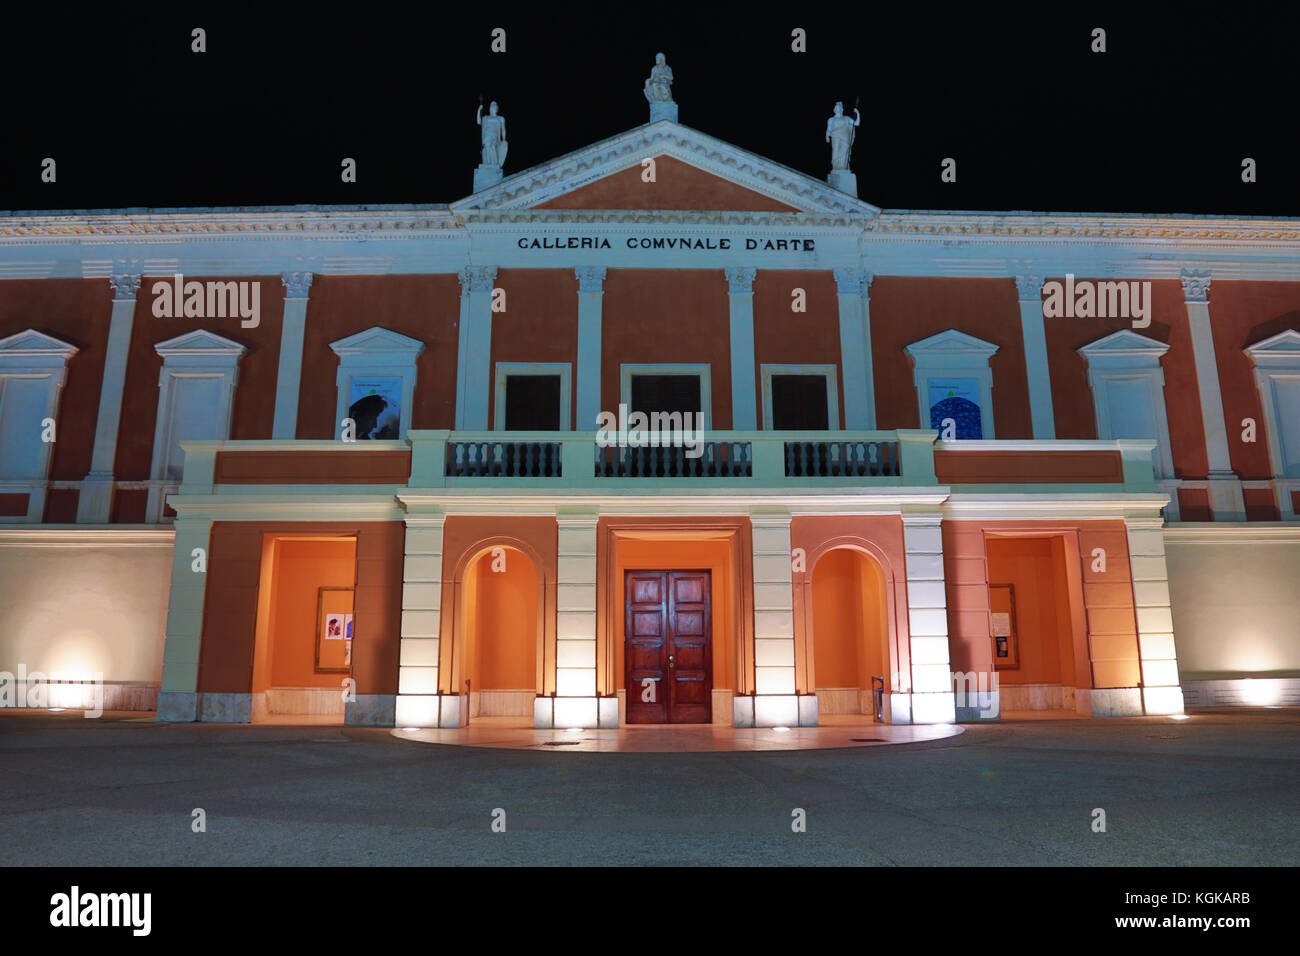 Galleria comunale d'arte, municipal art gallery, à Cagliari, Sardaigne, Italie Banque D'Images